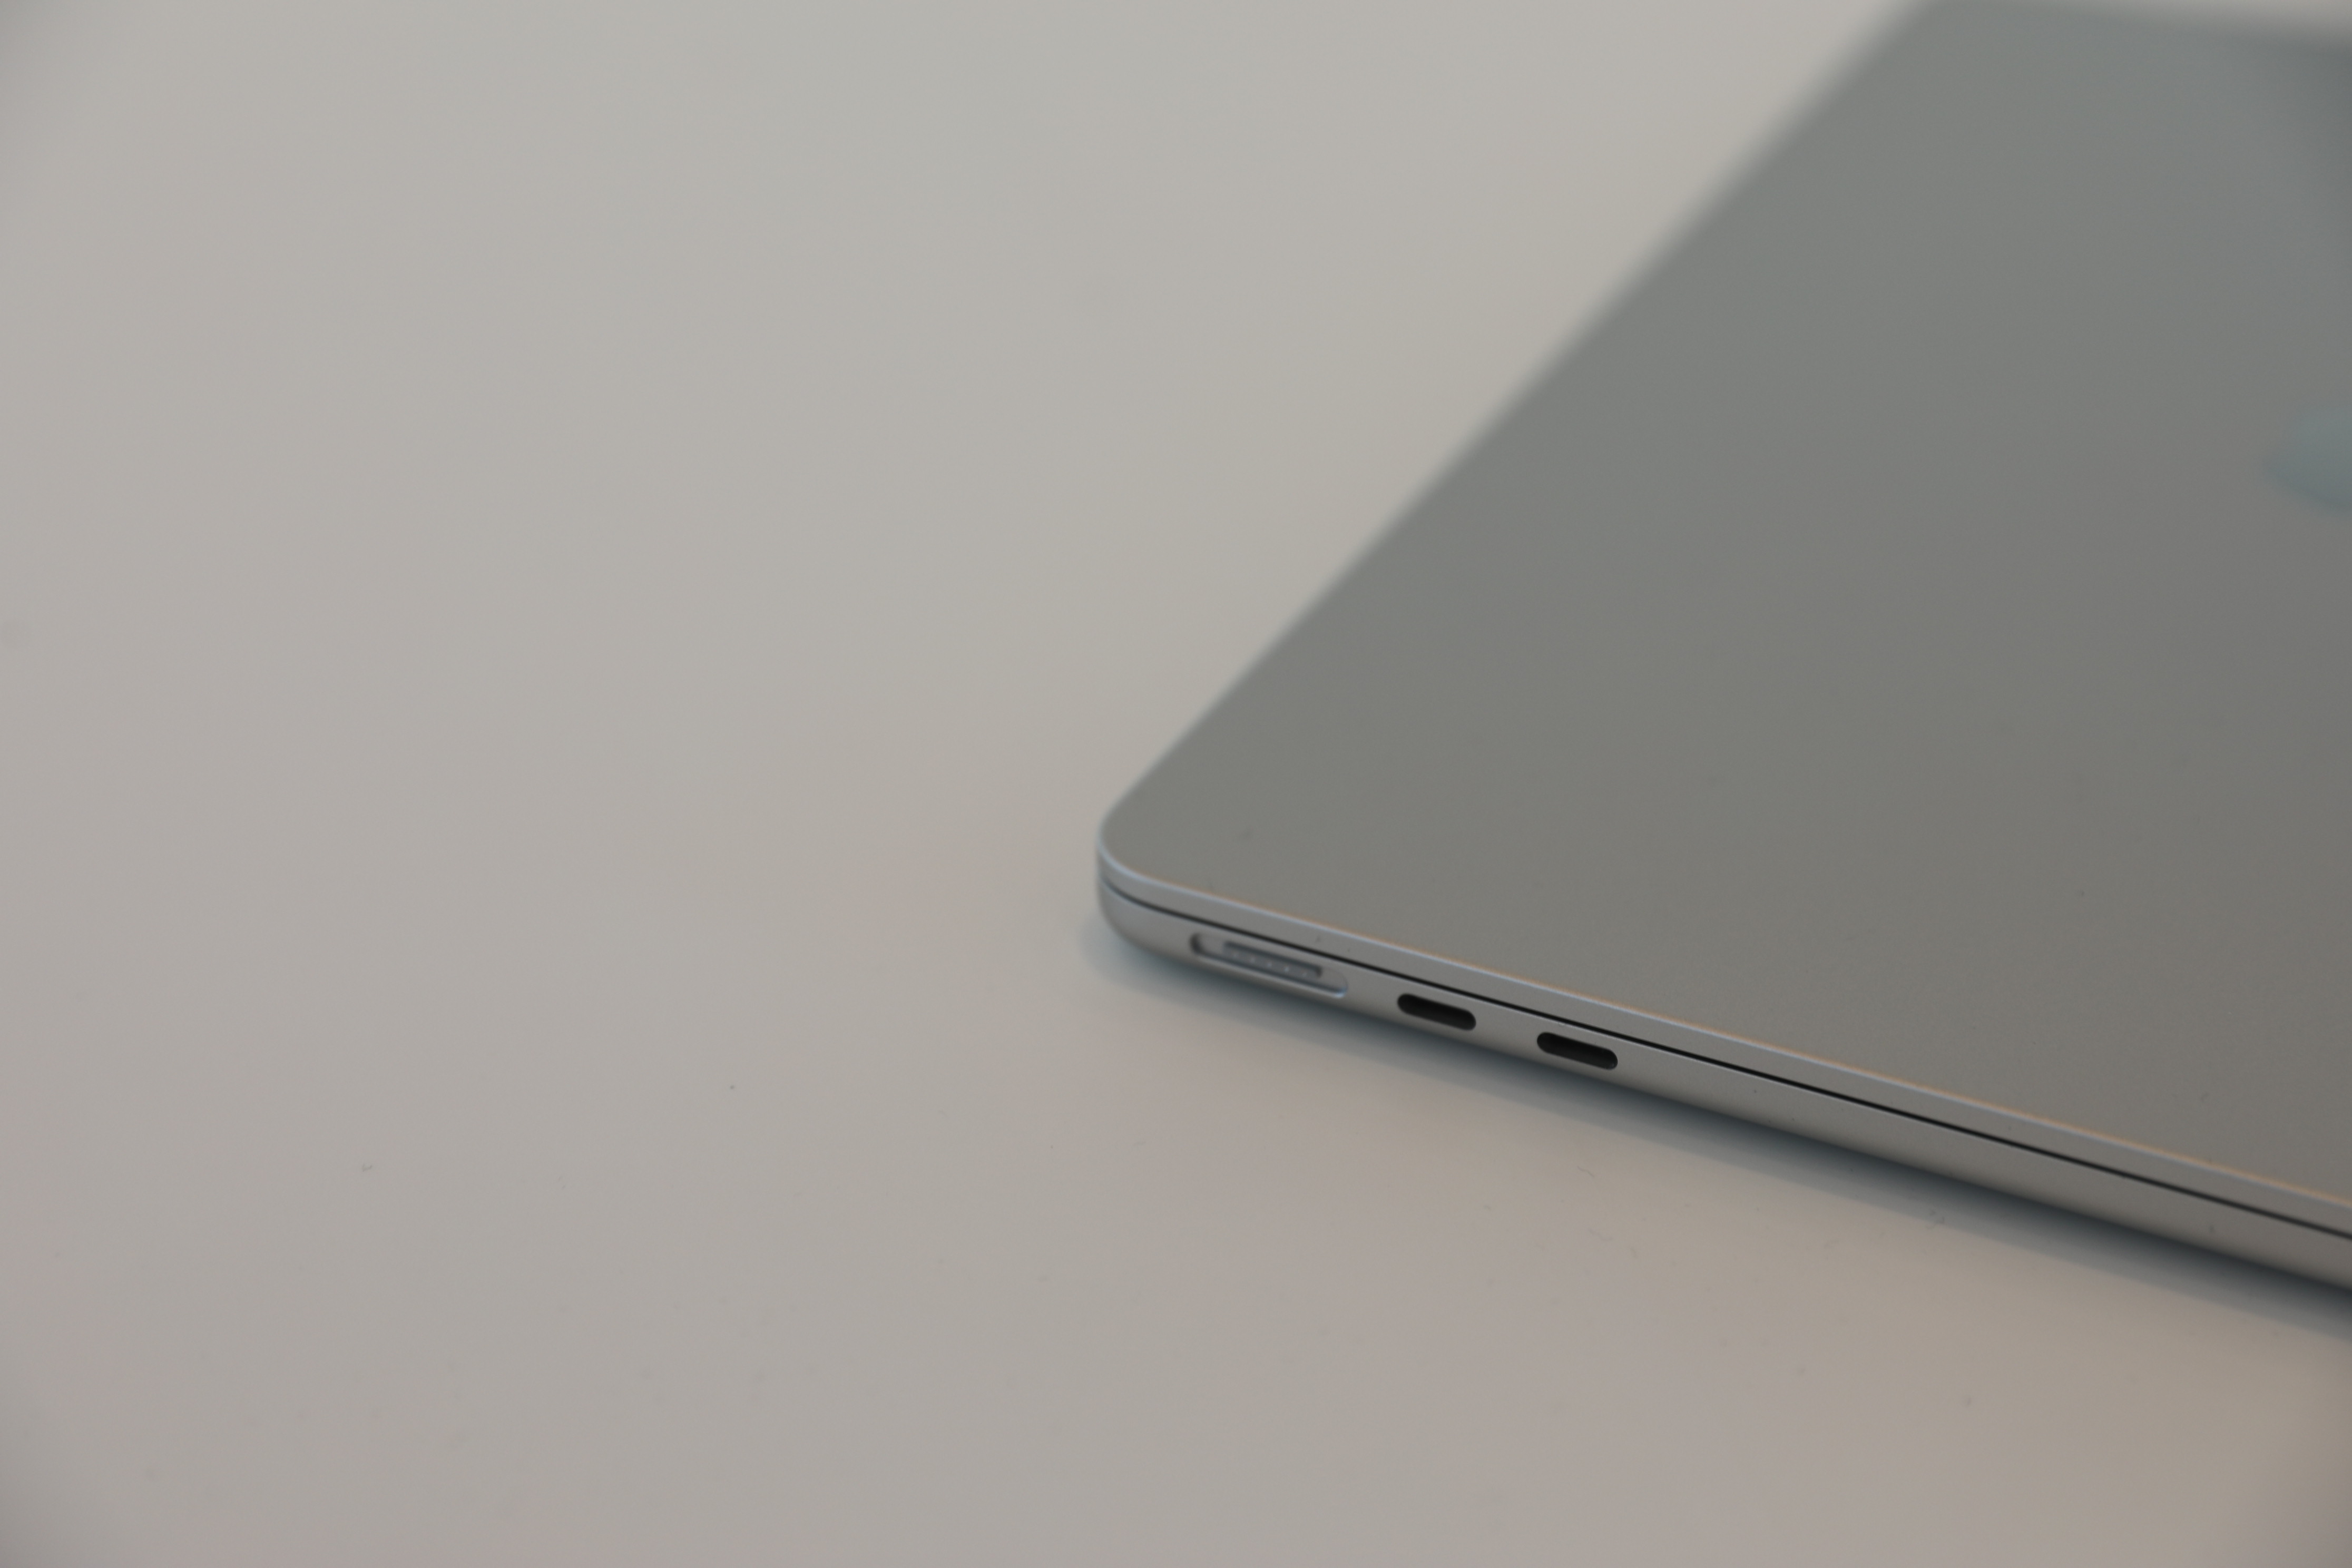 CMC 1342 - Apple Macbook Air M2 (2022) price in Nigeria and full specs